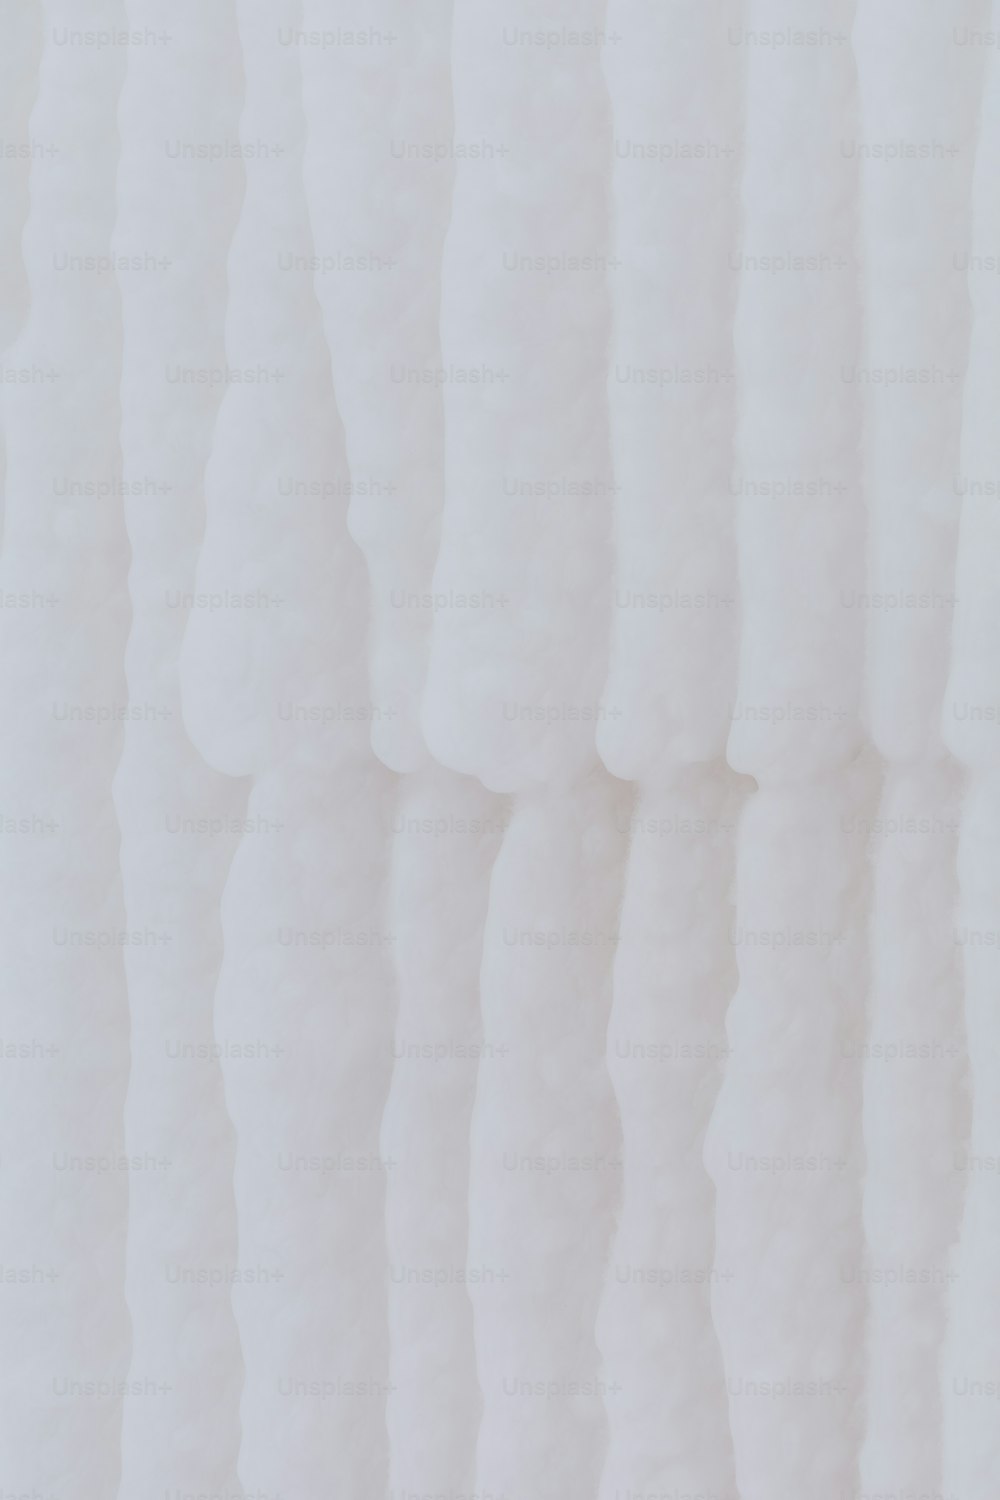 eine Nahaufnahme einer weißen Wand mit Wellenlinien